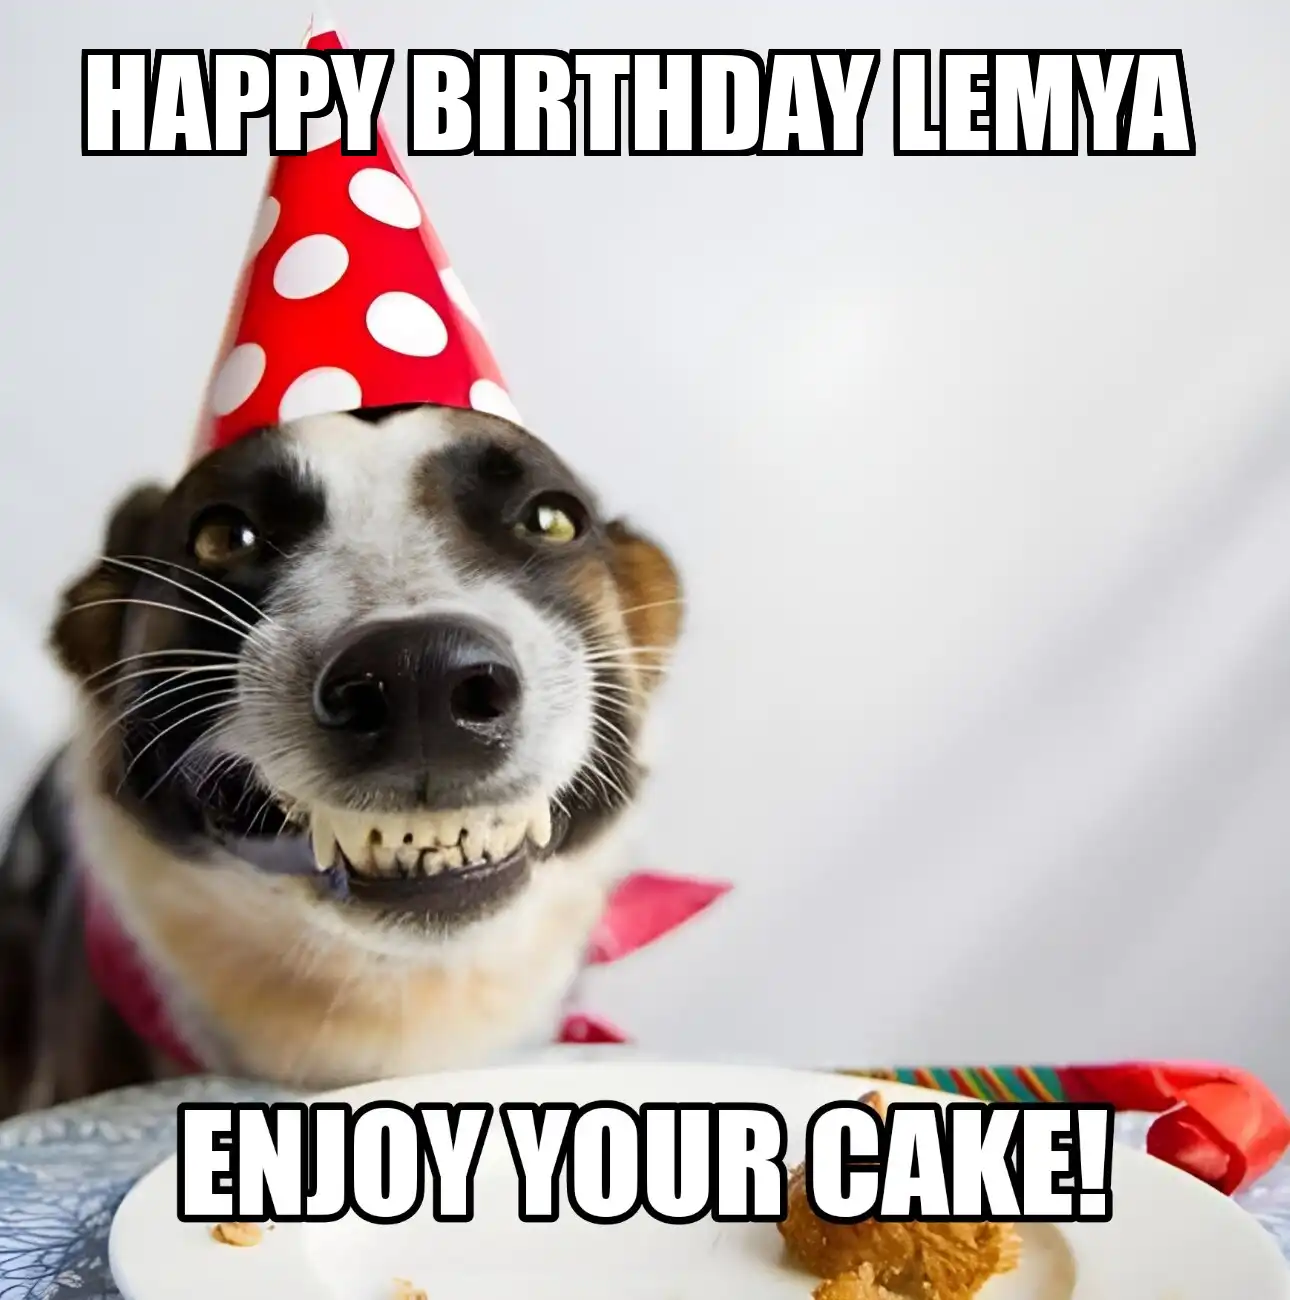 Happy Birthday Lemya Enjoy Your Cake Dog Meme